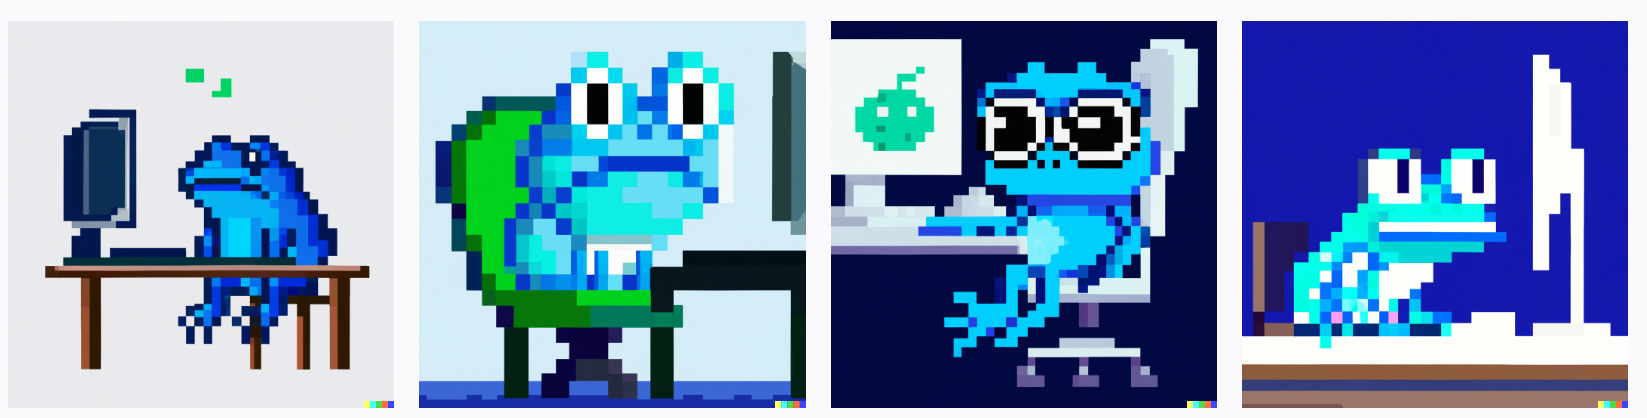 Blue pixel frog sitting in front of computer, digital art, pixel art